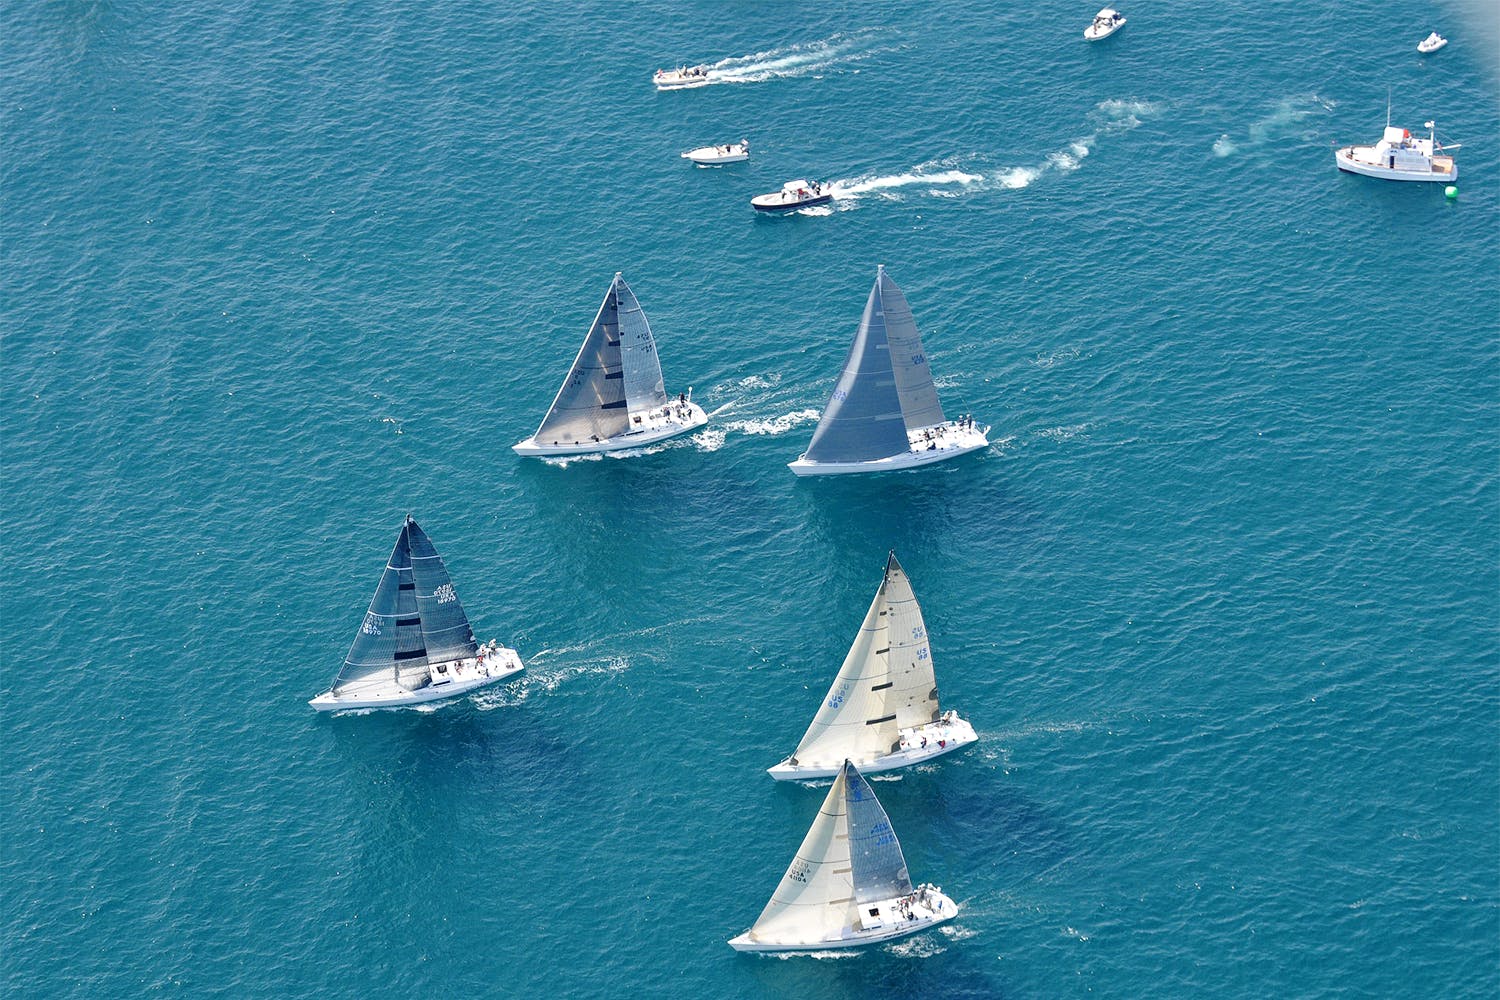 Vehicle,Boat,Sailing,Sail,Sailing,Sailboat,Watercraft,Yacht,Yacht racing,Recreation